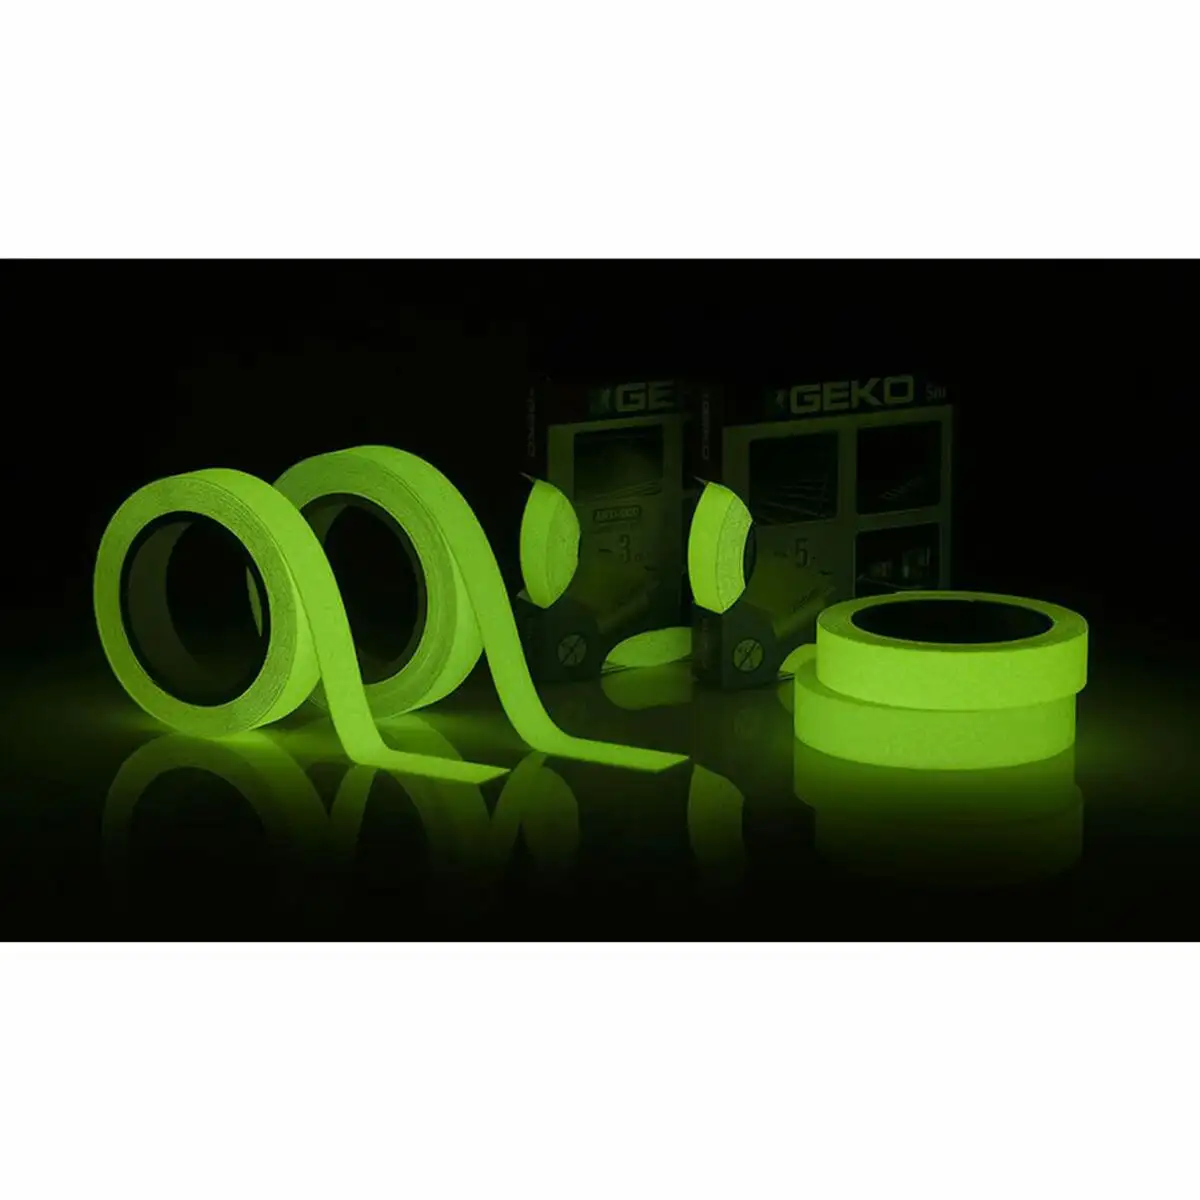 Ruban adhesif geko vert 25 mm x 5 m _7892. DIAYTAR SENEGAL - L'Art de Vivre en Couleurs. Découvrez notre boutique en ligne et trouvez des produits qui ajoutent une palette vibrante à votre quotidien.